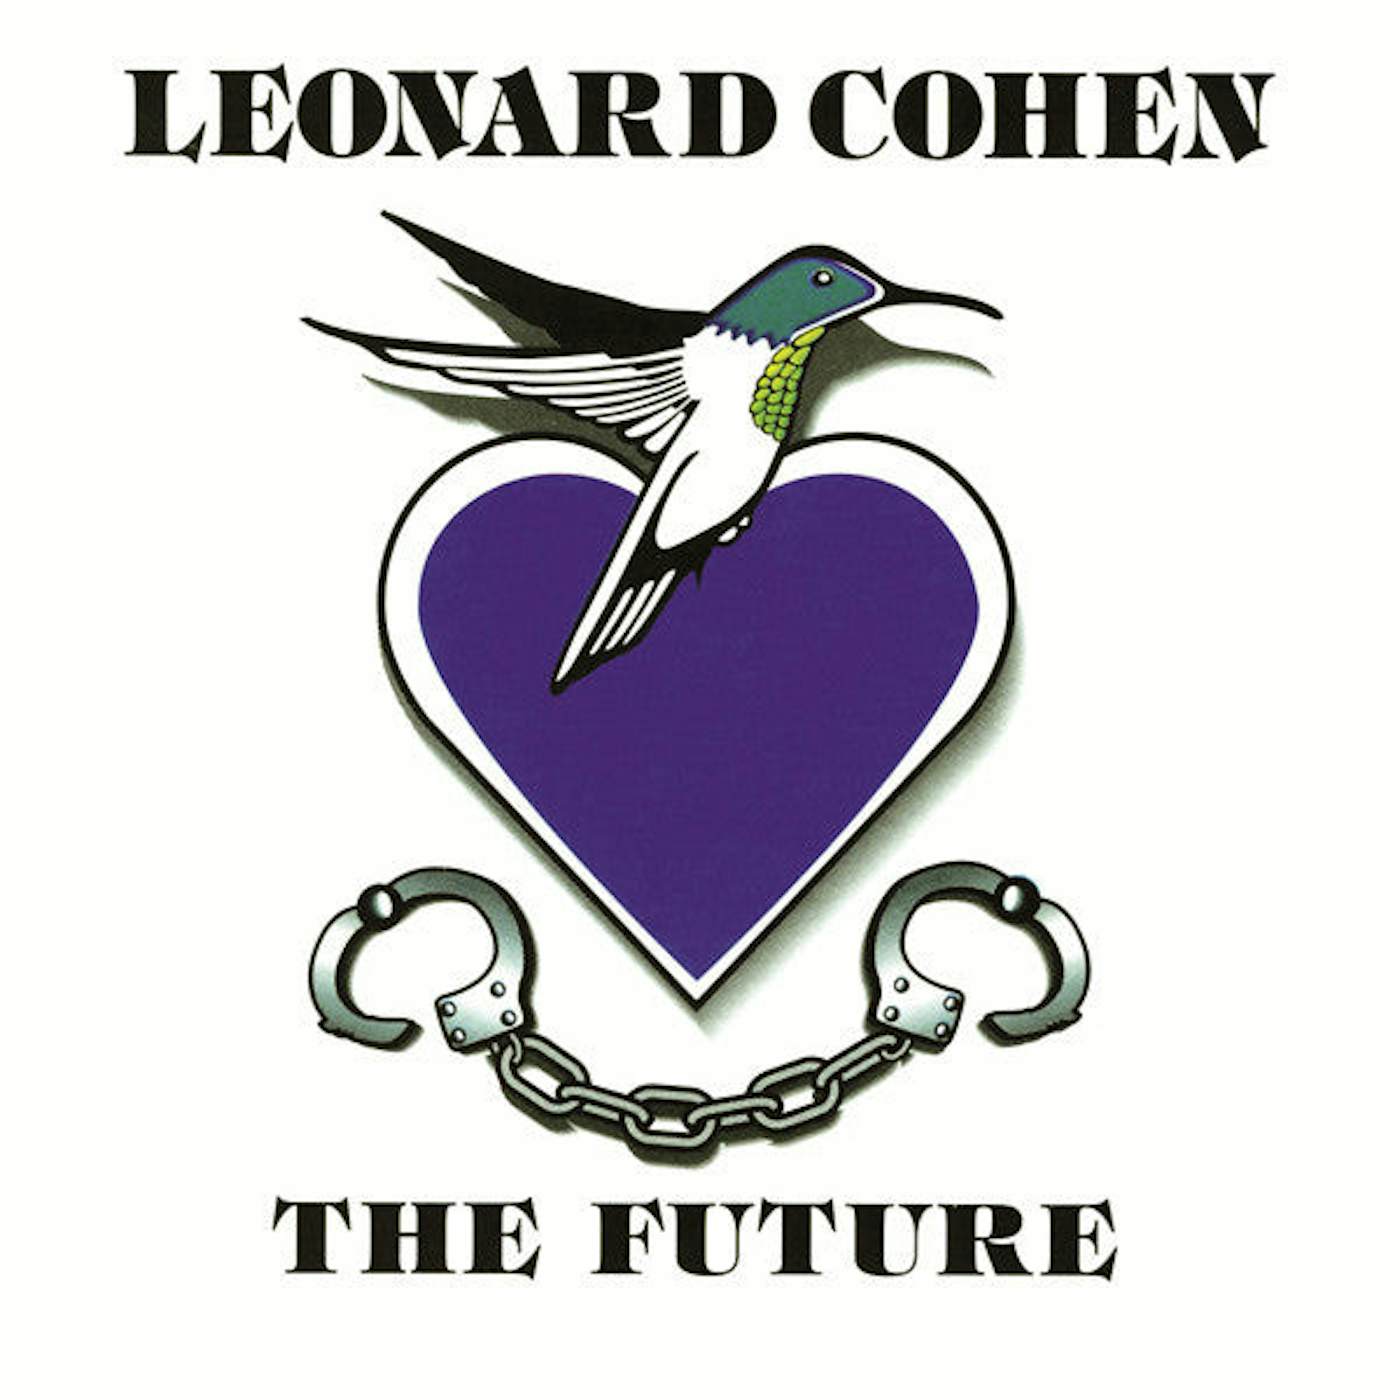 Leonard Cohen THE FUTURE